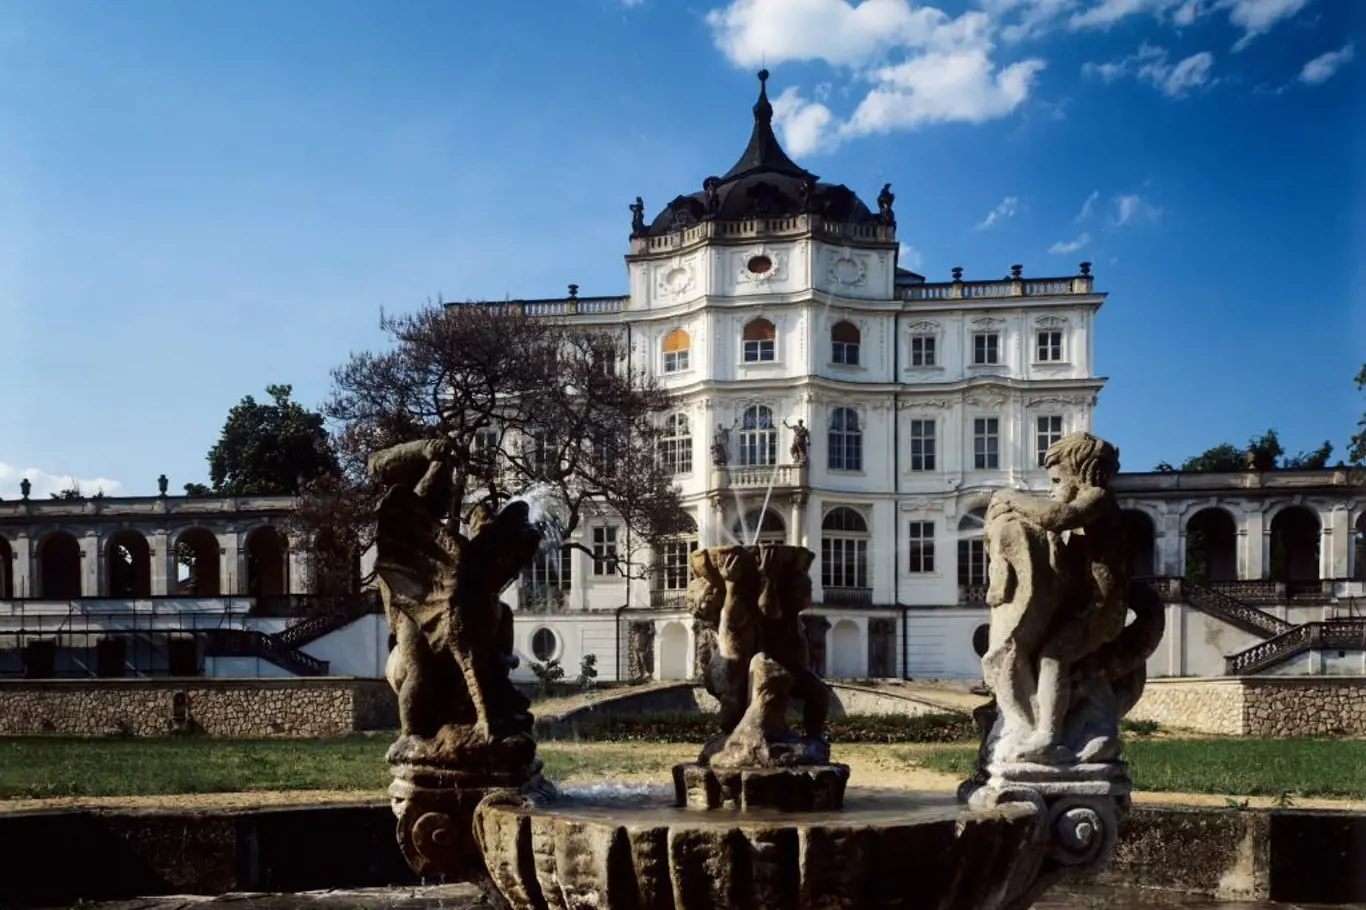 <p>Jedním z nejkrásnějších zámků v severních Čechách jsou Ploskovice</p>
